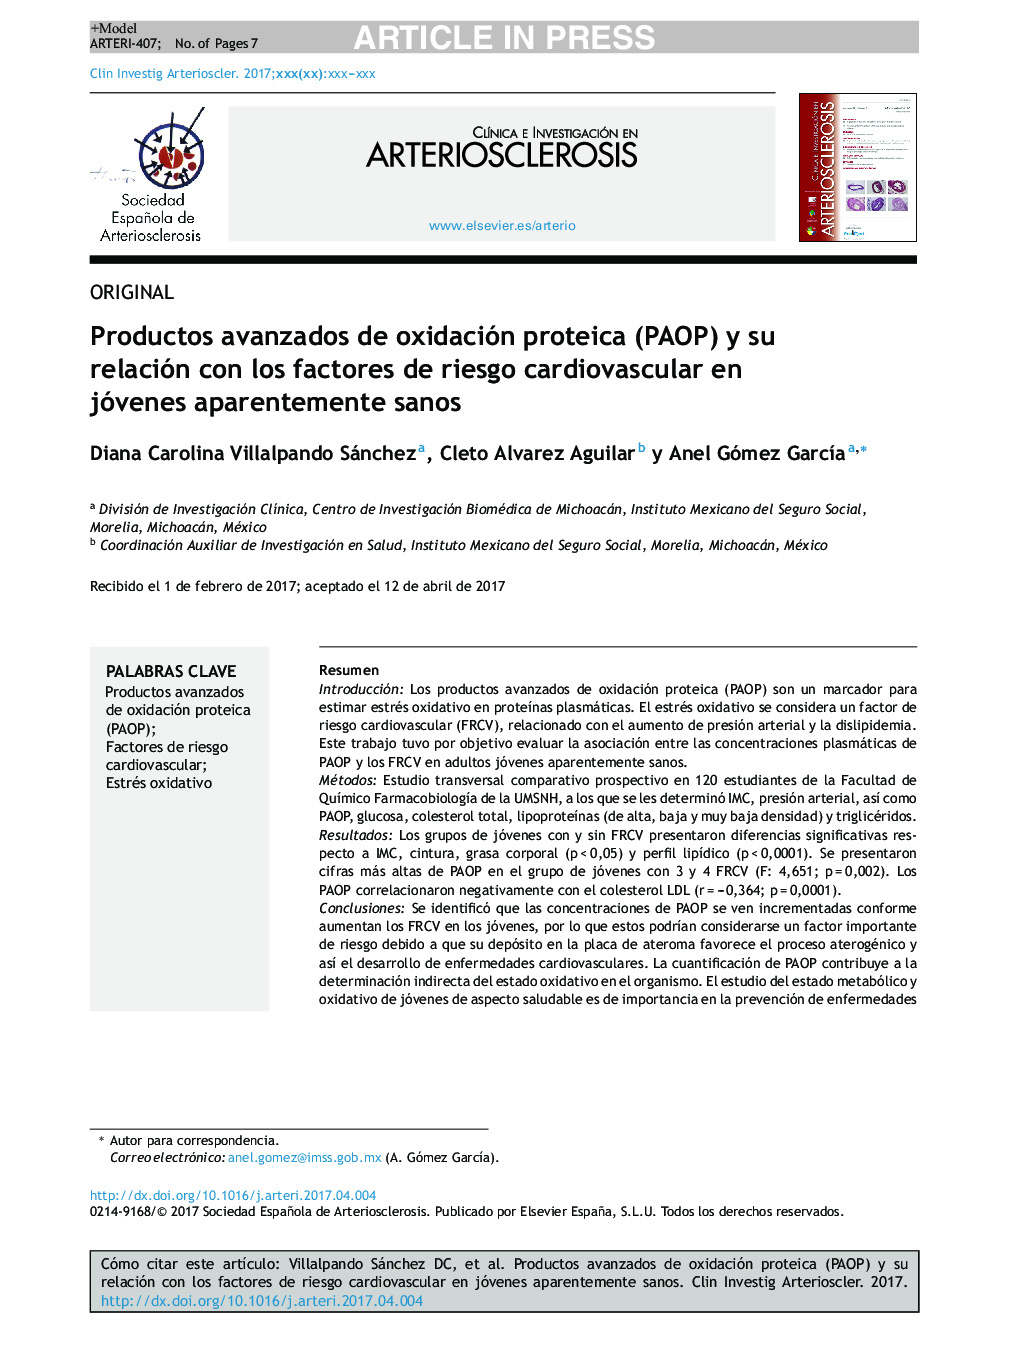 Productos avanzados de oxidación proteica (PAOP) y su relación con los factores de riesgo cardiovascular en jóvenes aparentemente sanos